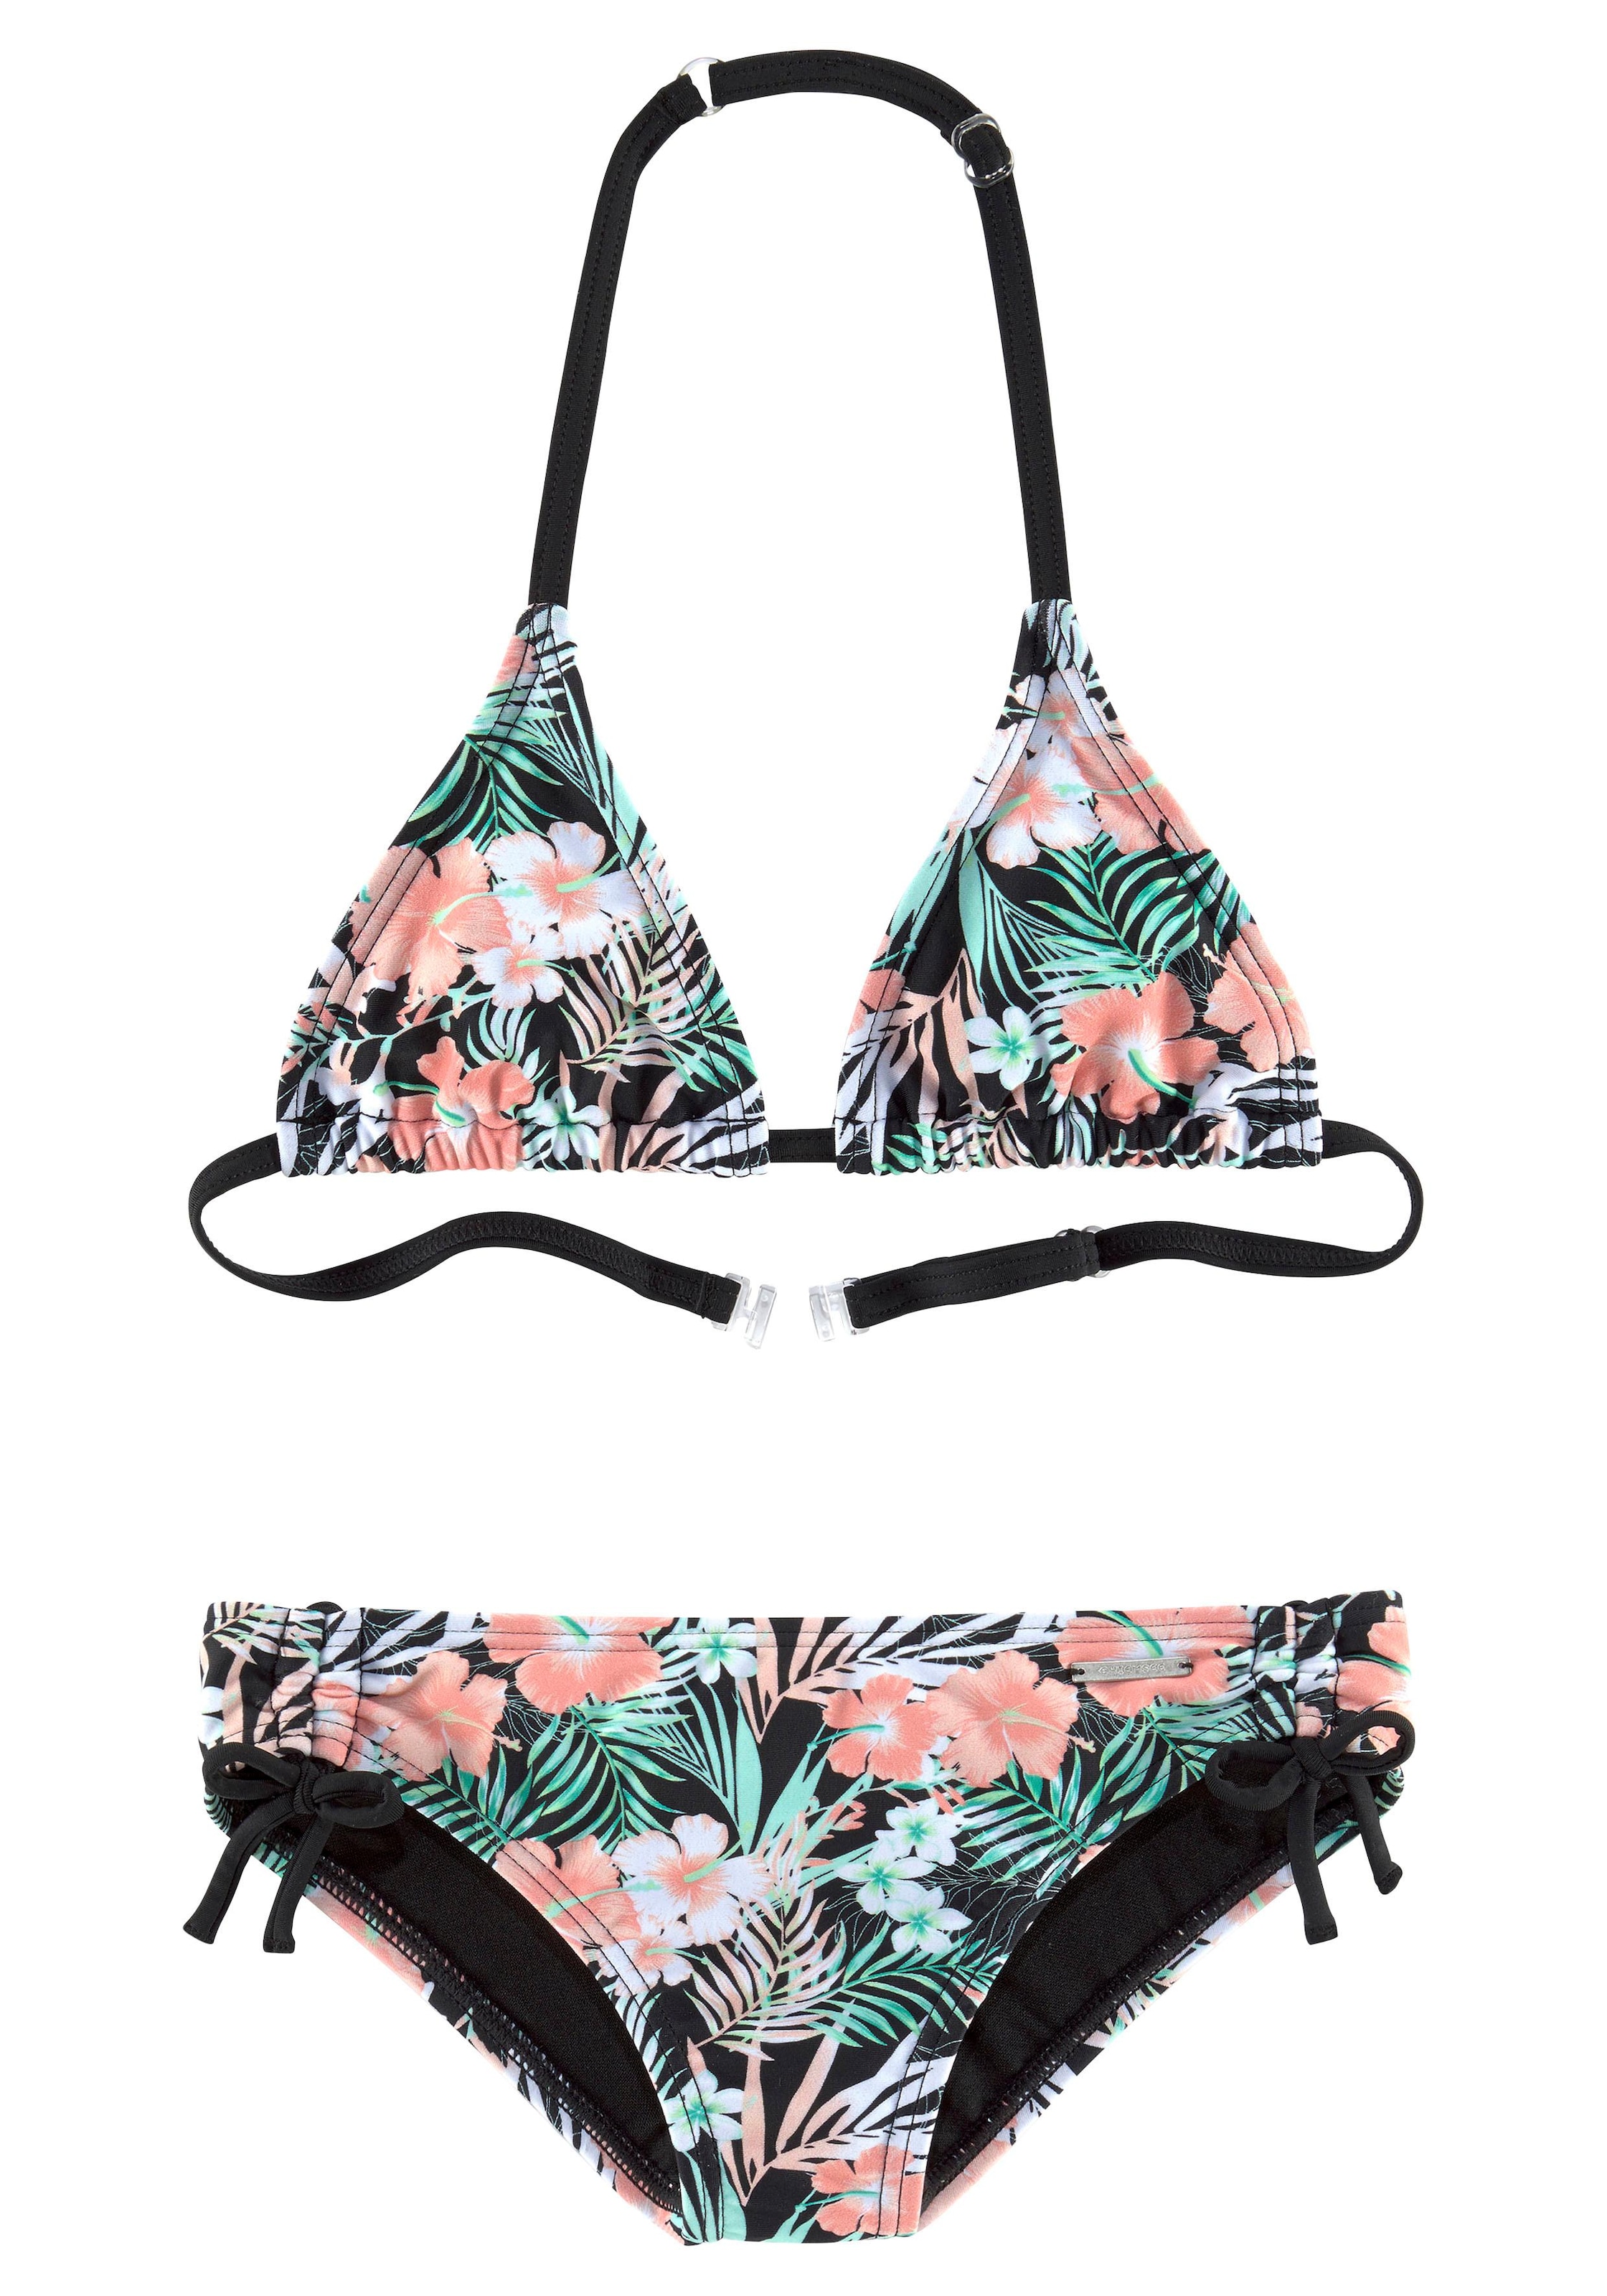 Chiemsee Triangel-Bikini, bei floralem mit Design